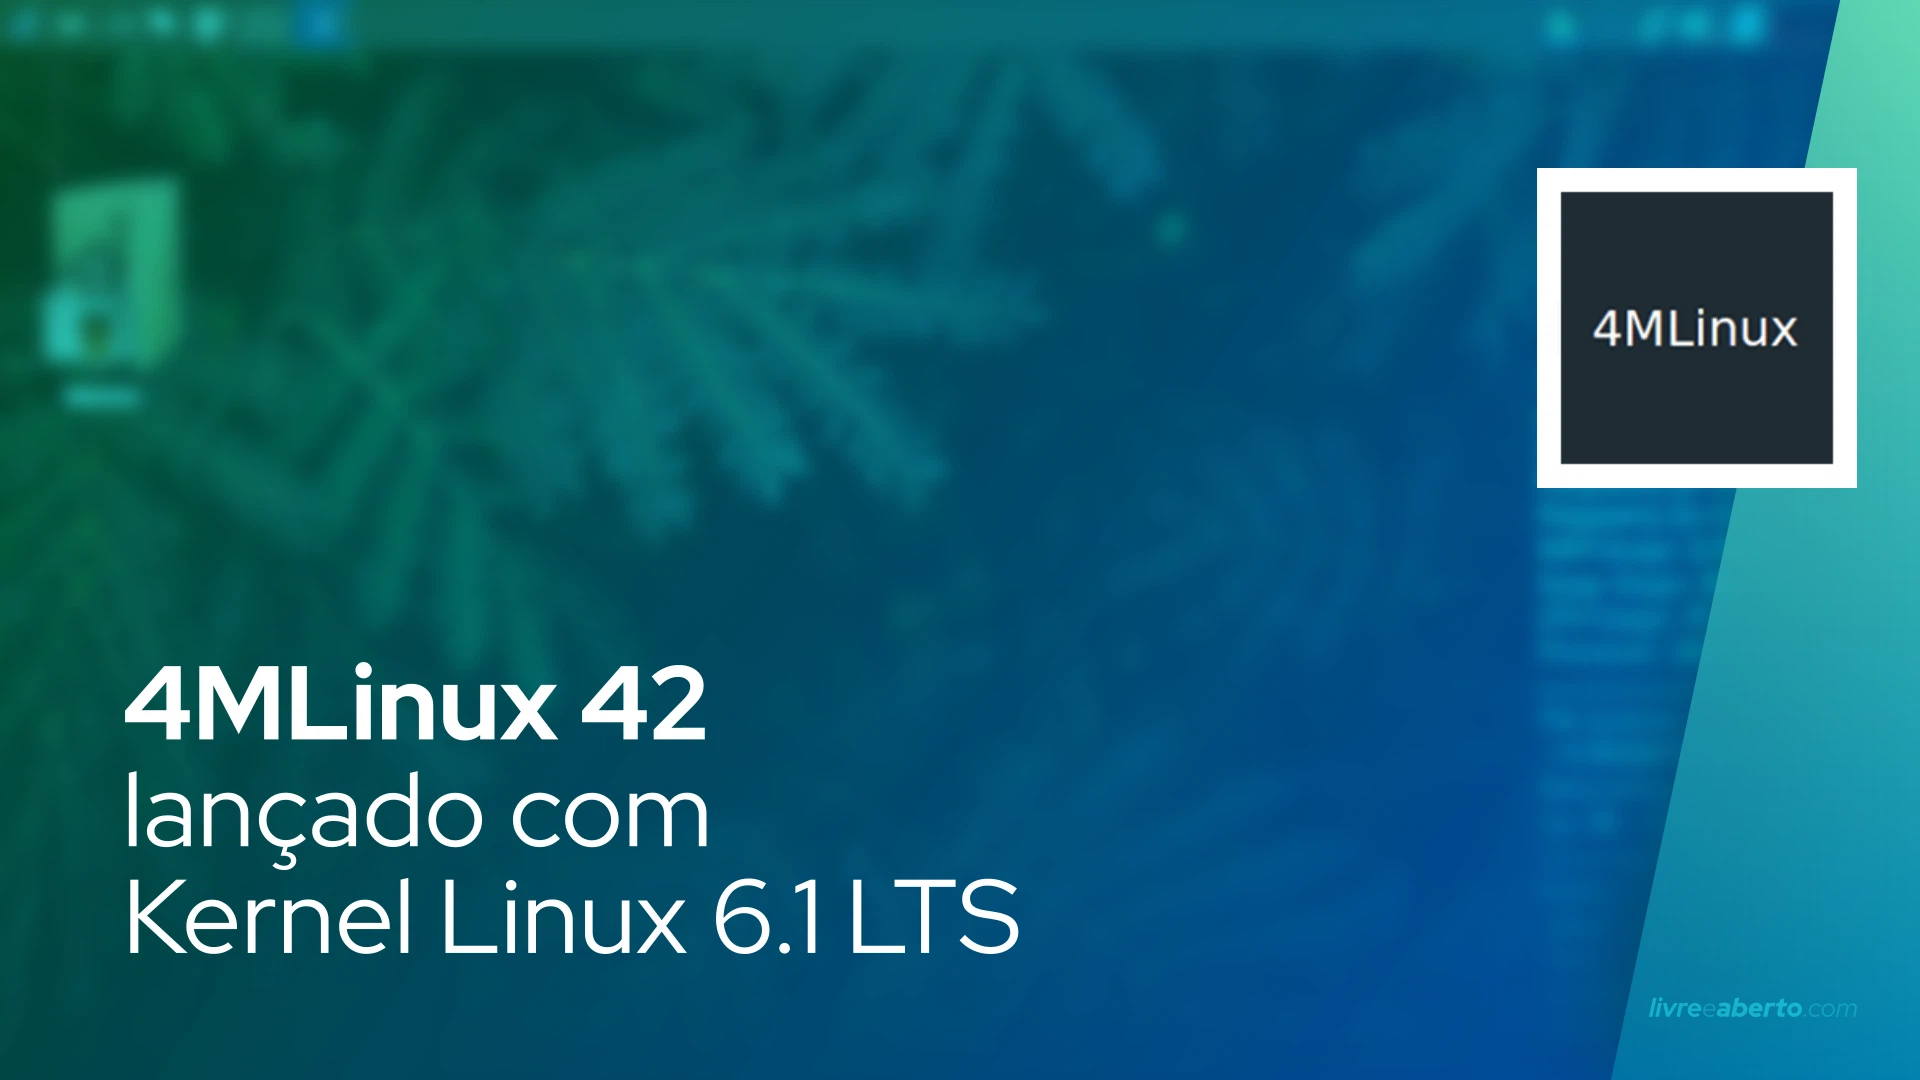 4MLinux 42 lançado com Kernel Linux 6.1 LTS